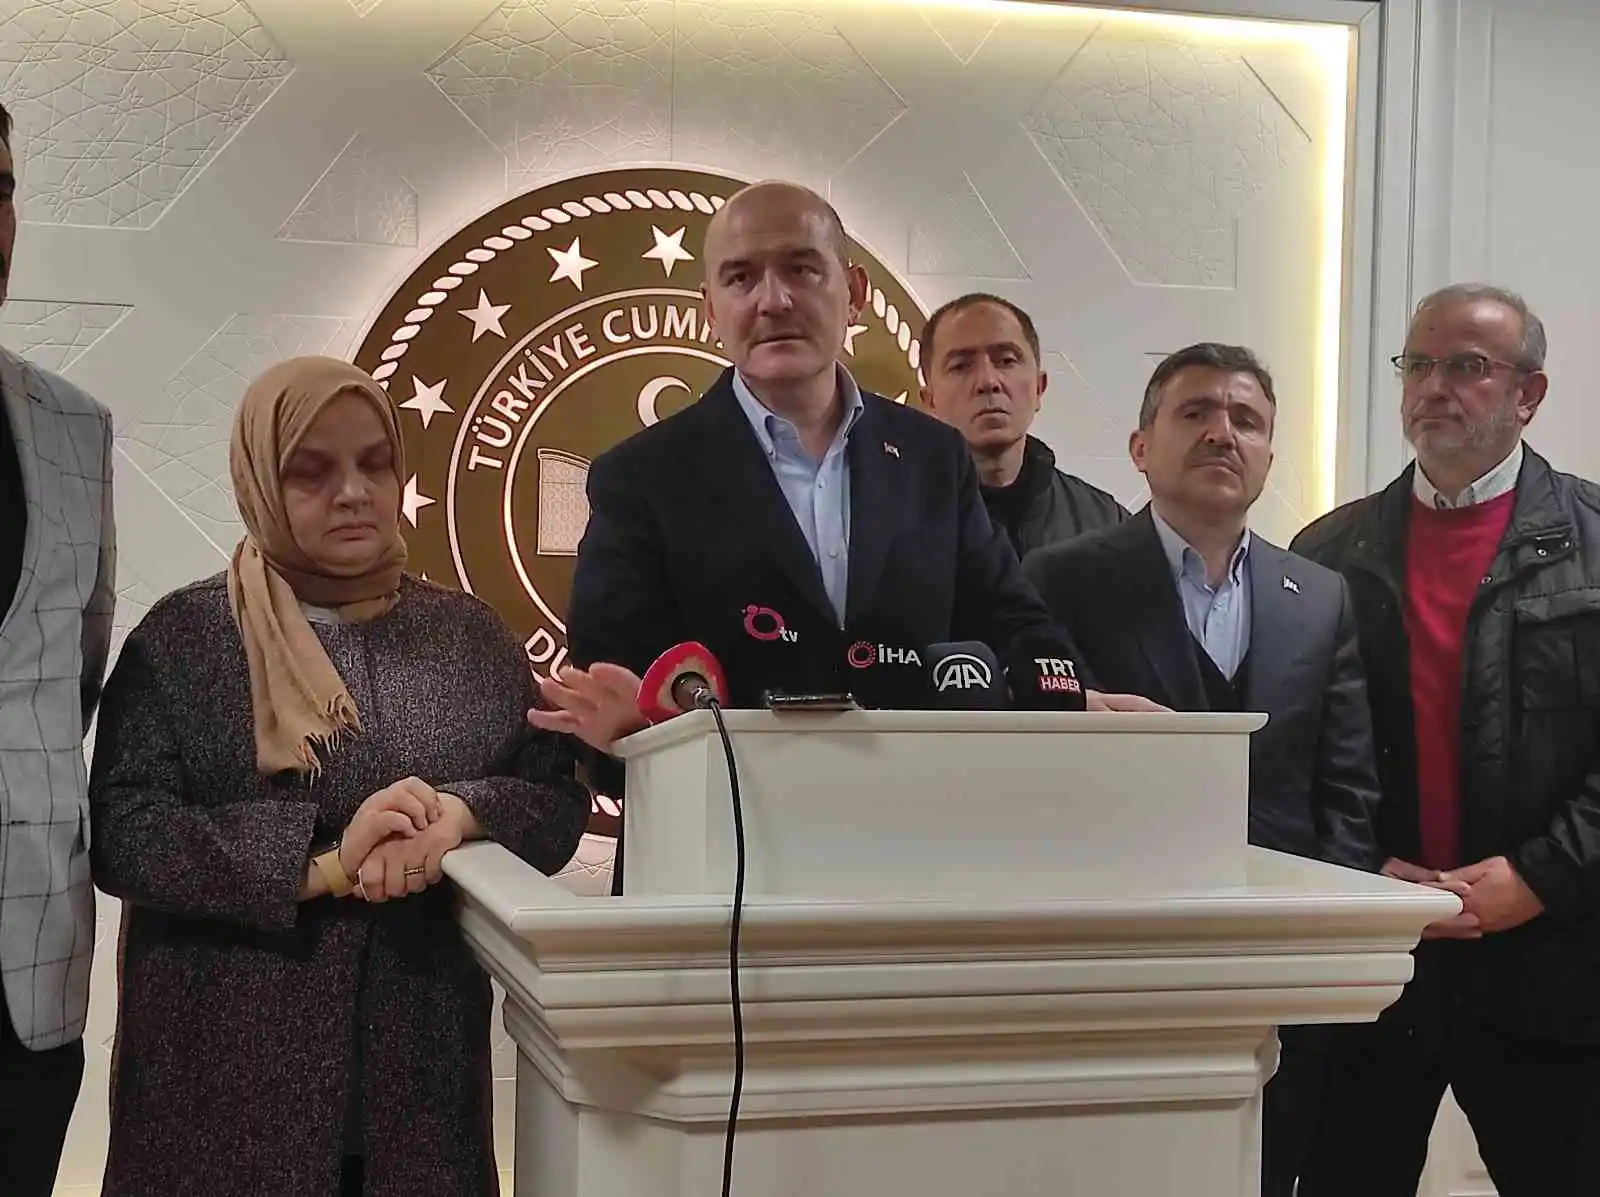 İçişleri Bakanı Süleyman Soylu: "Geçmişte yaşanan travmanın etkisini istismar edenler var"
